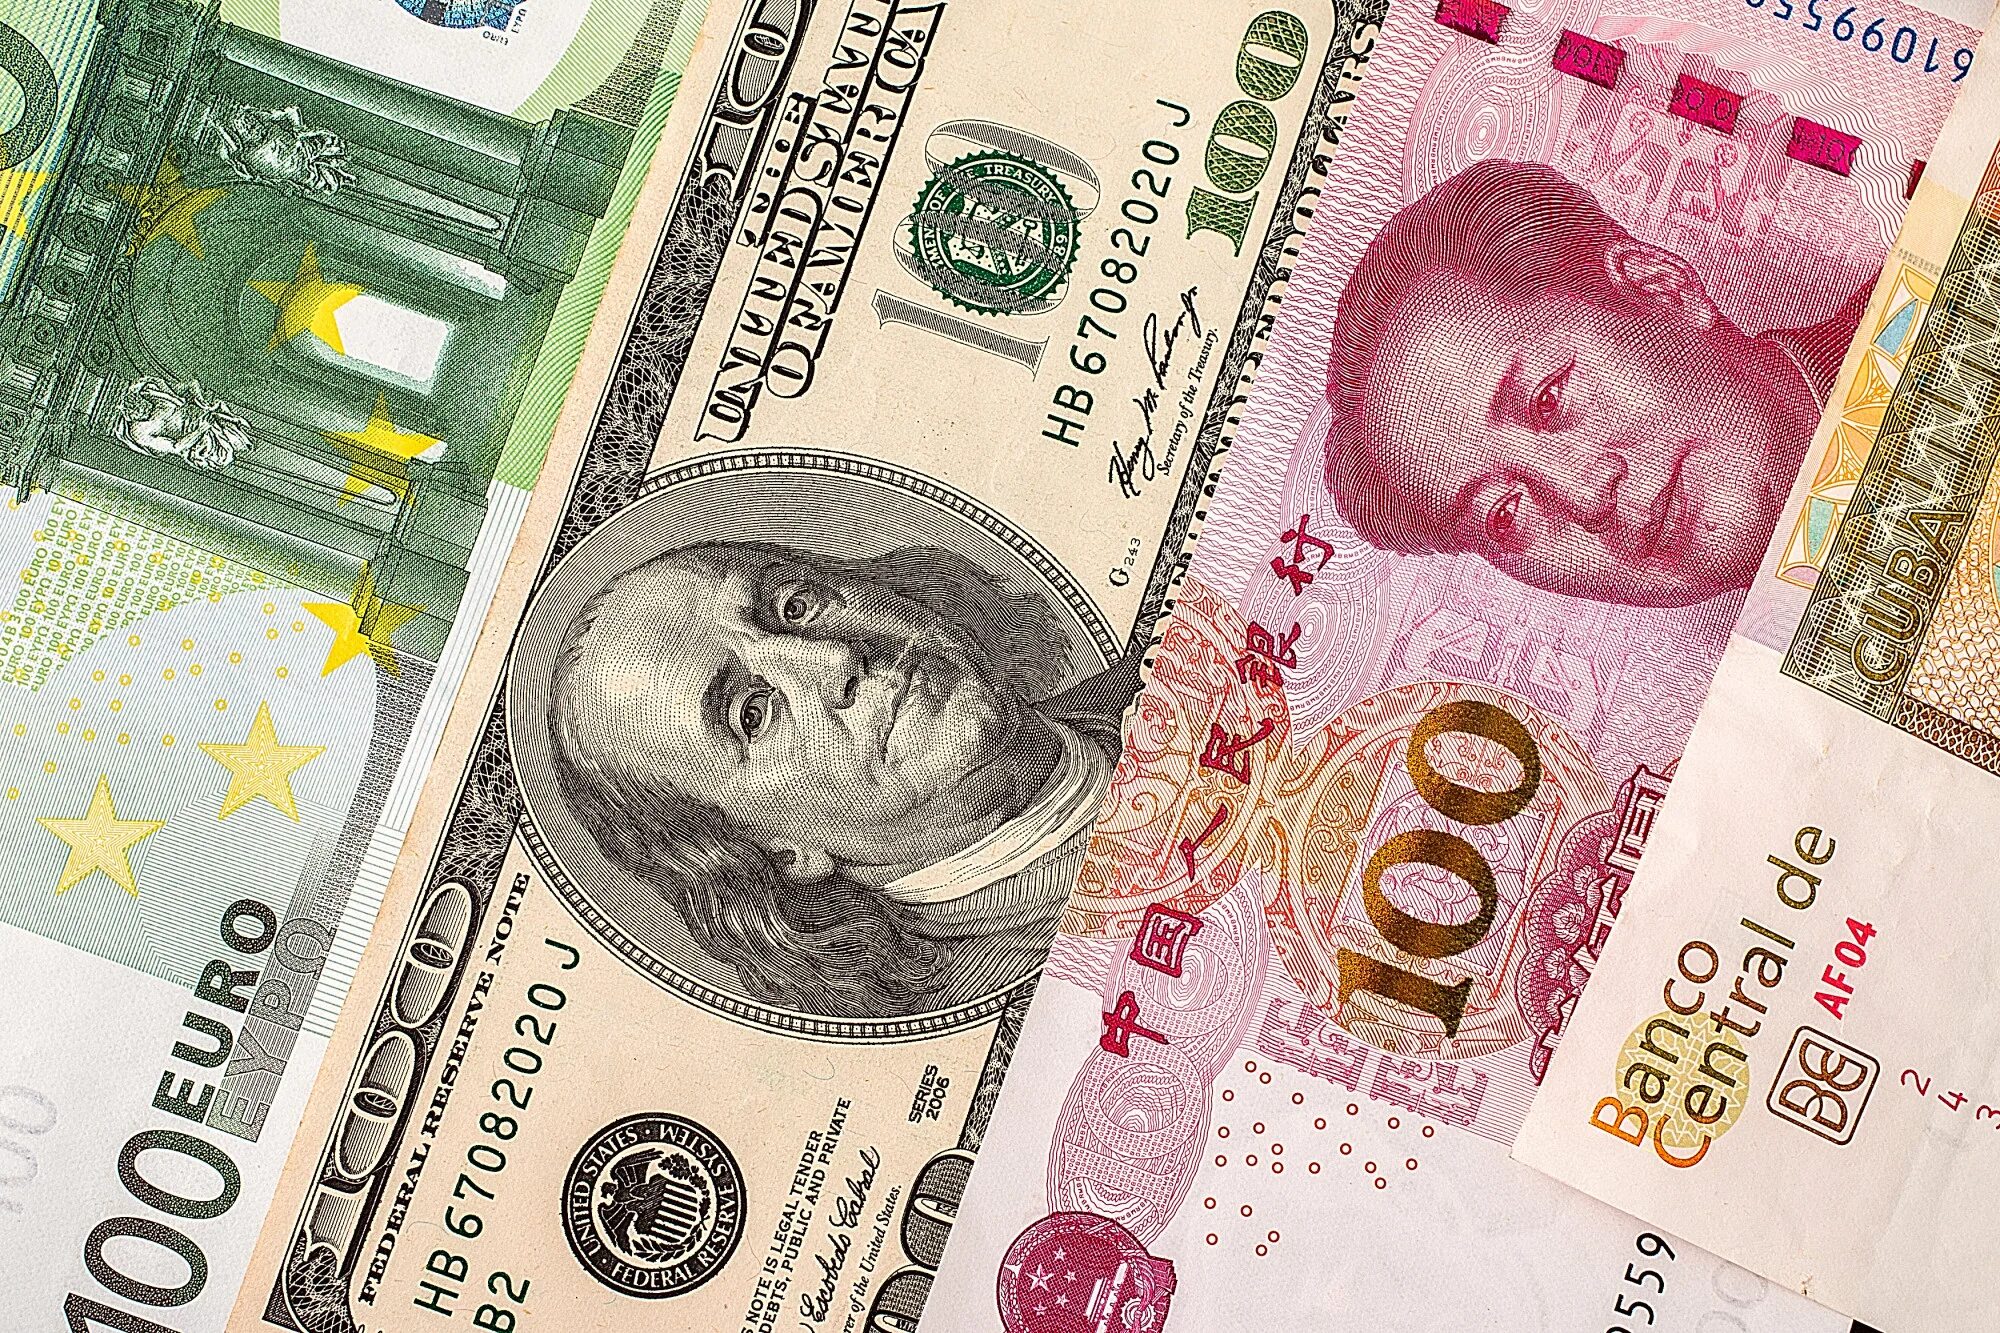 Обмен евро на доллары. Доллар евро юань. Деньги евро доллары юани. Юань к доллару. Китайский юань банкноты.